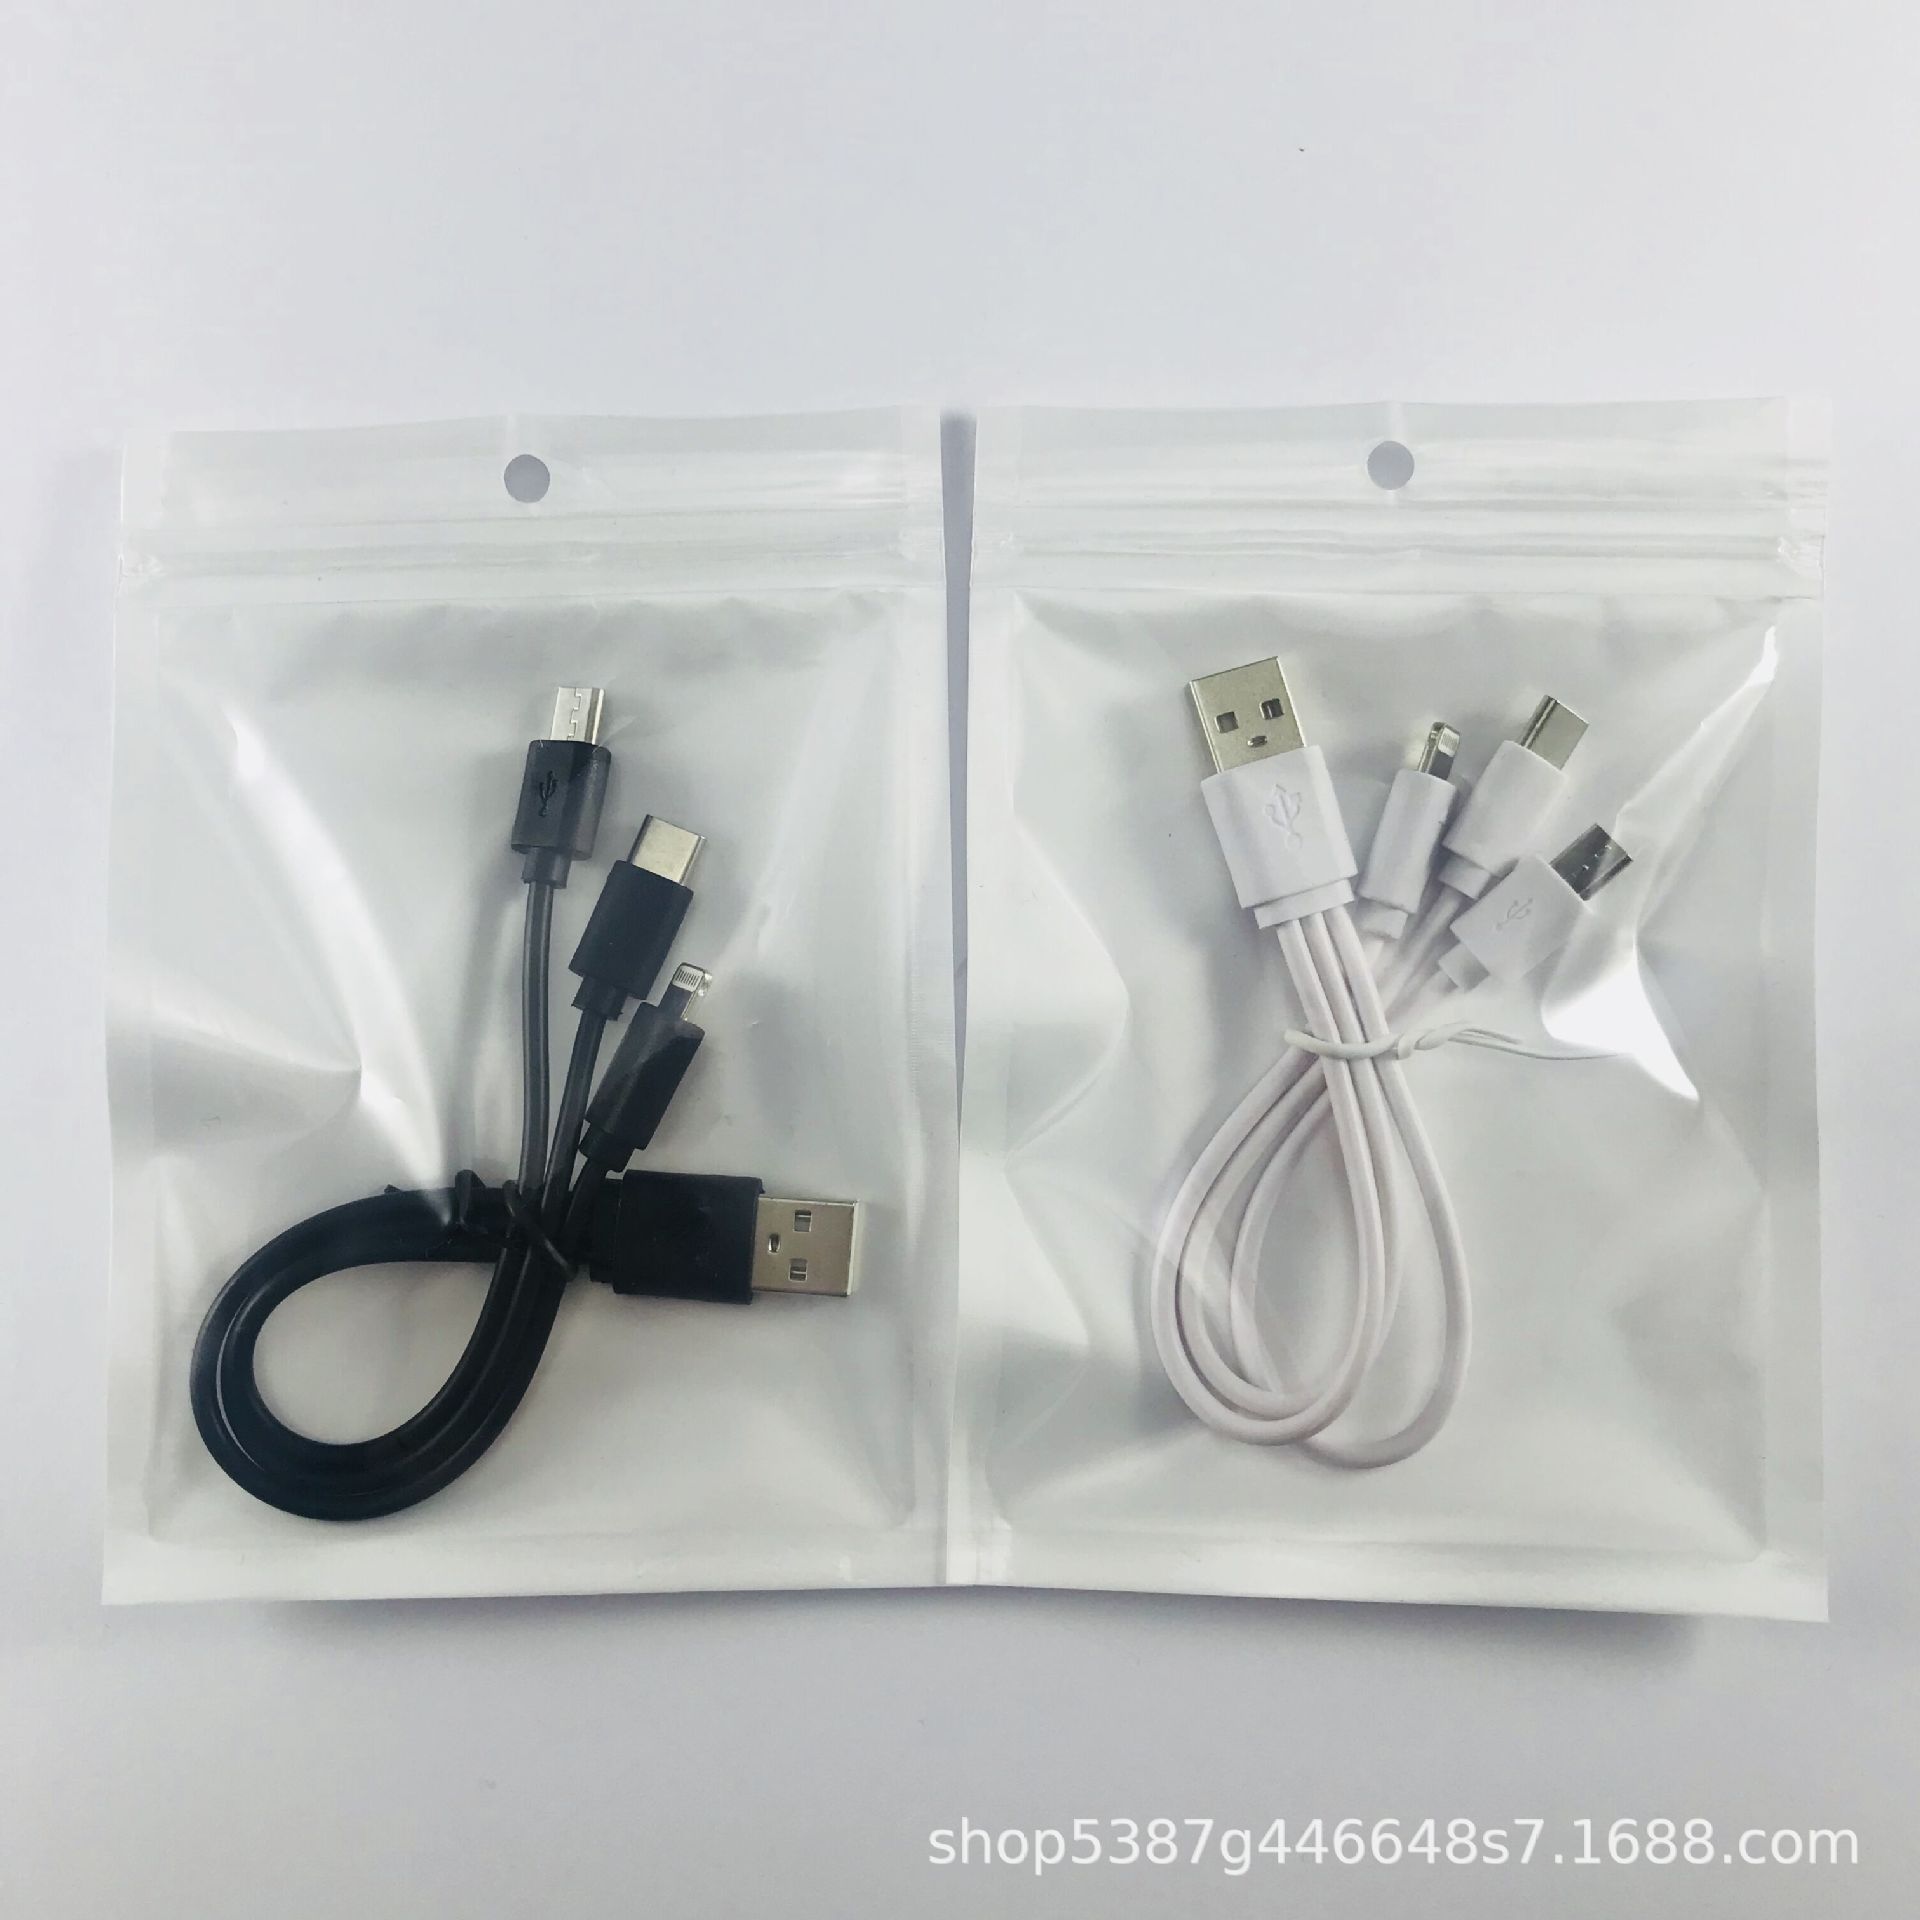 Câble adaptateur pour smartphone - Ref 3380912 Image 22